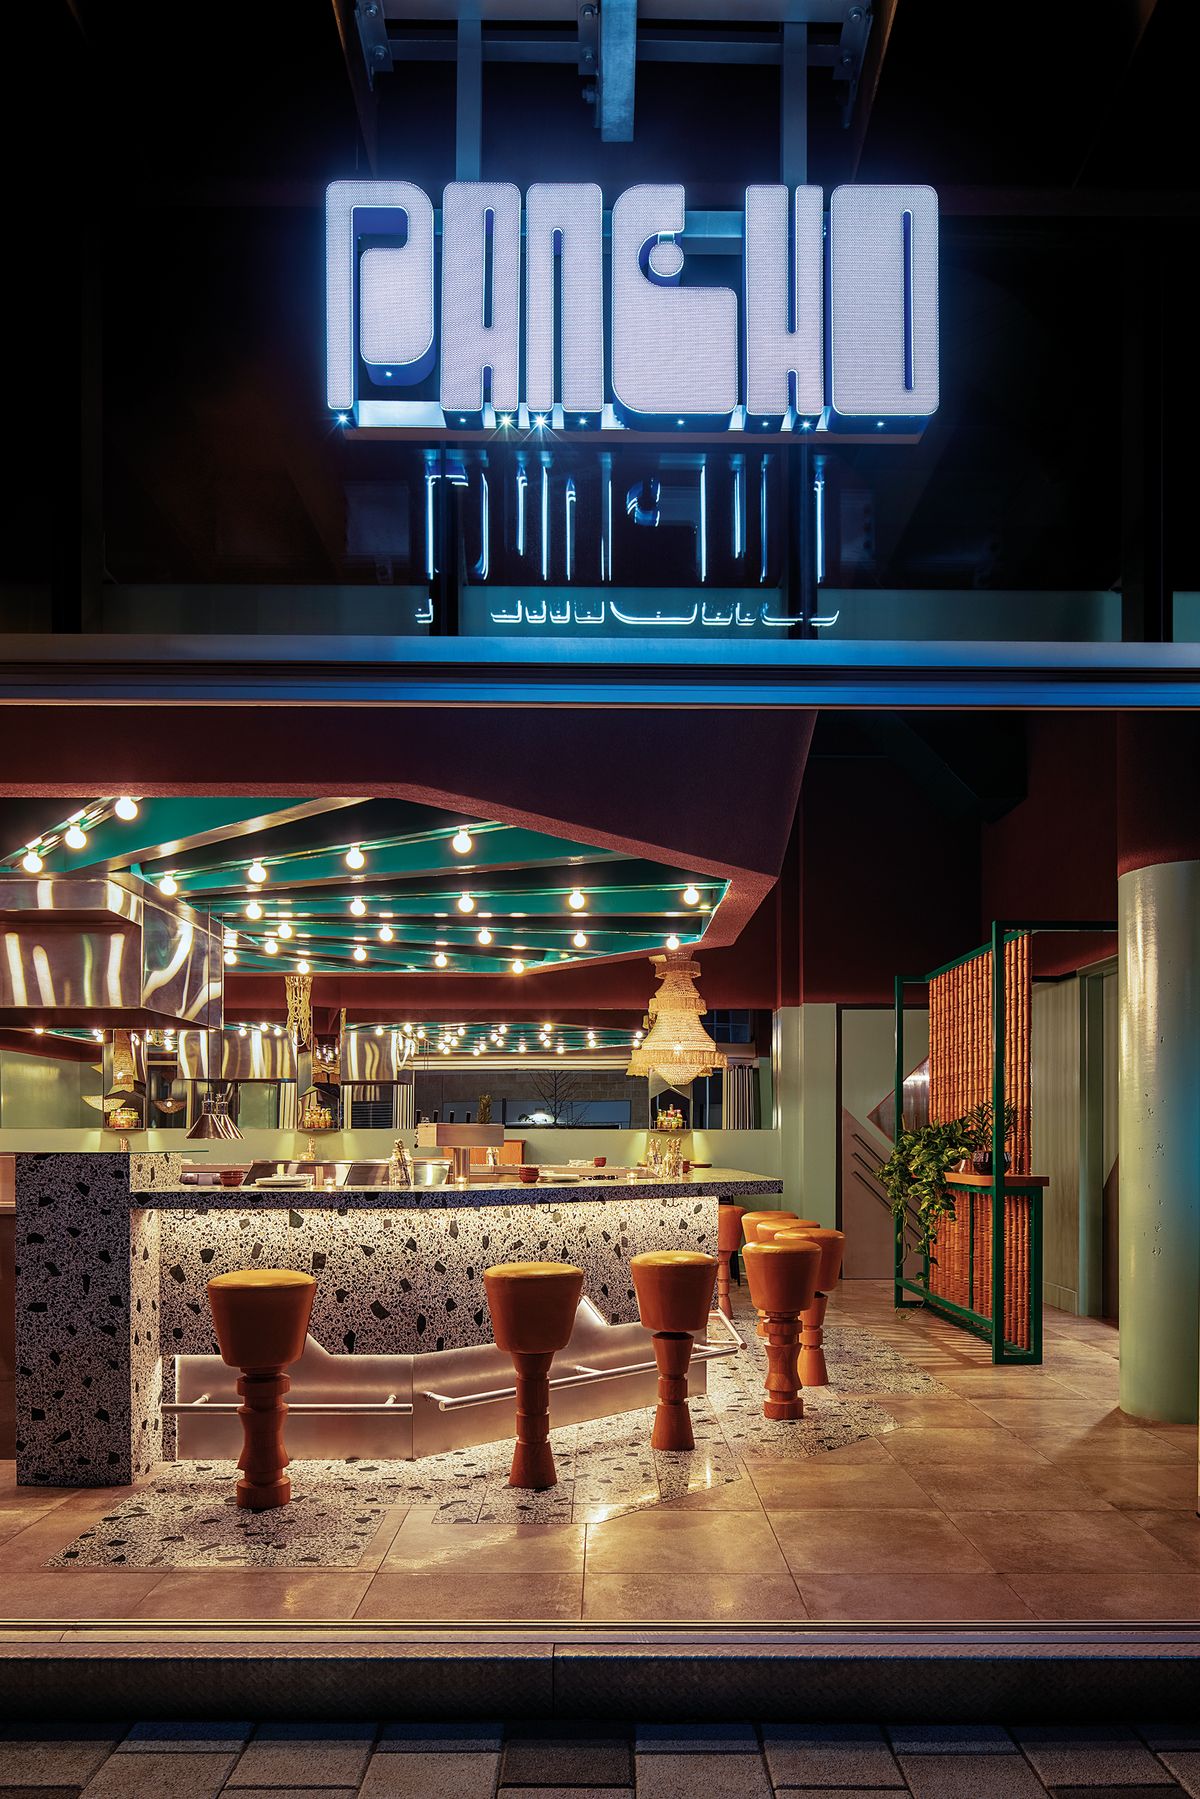 Bar s reštauráciou Pancho v kanadskom Montreale využíva terrazzo nielen ako súčasť podlahy, ale tiež vertikálnych obkladových prvkov.